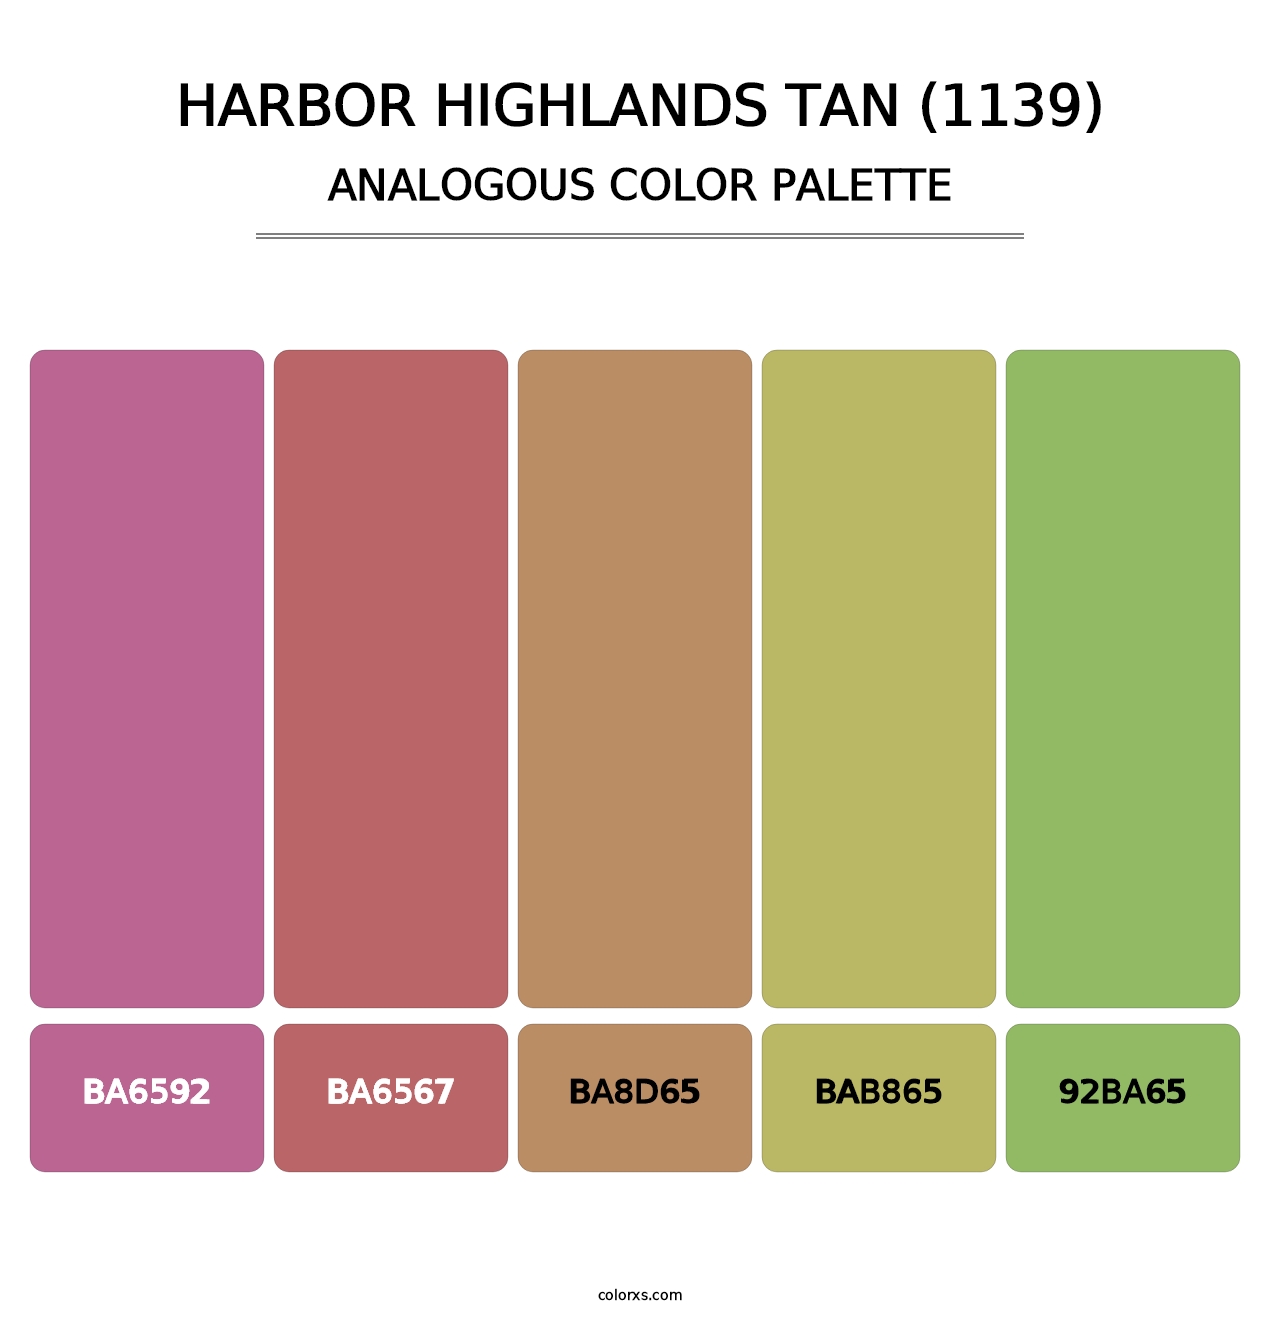 Harbor Highlands Tan (1139) - Analogous Color Palette